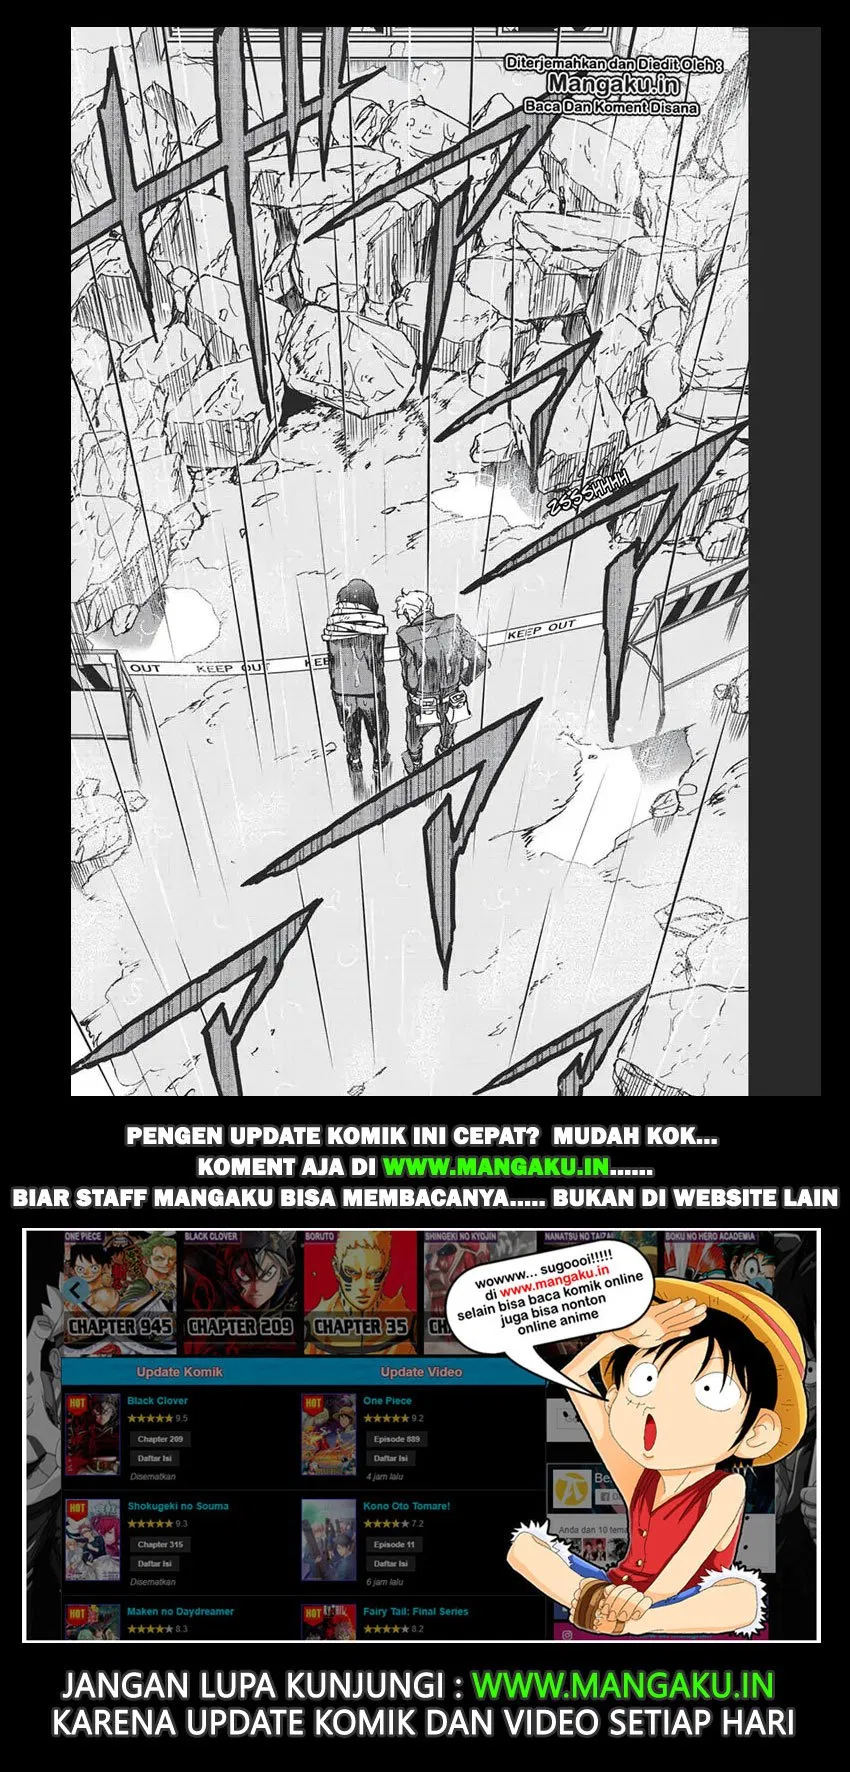 Vigilante: Boku no Hero Academia Illegals Chapter 64